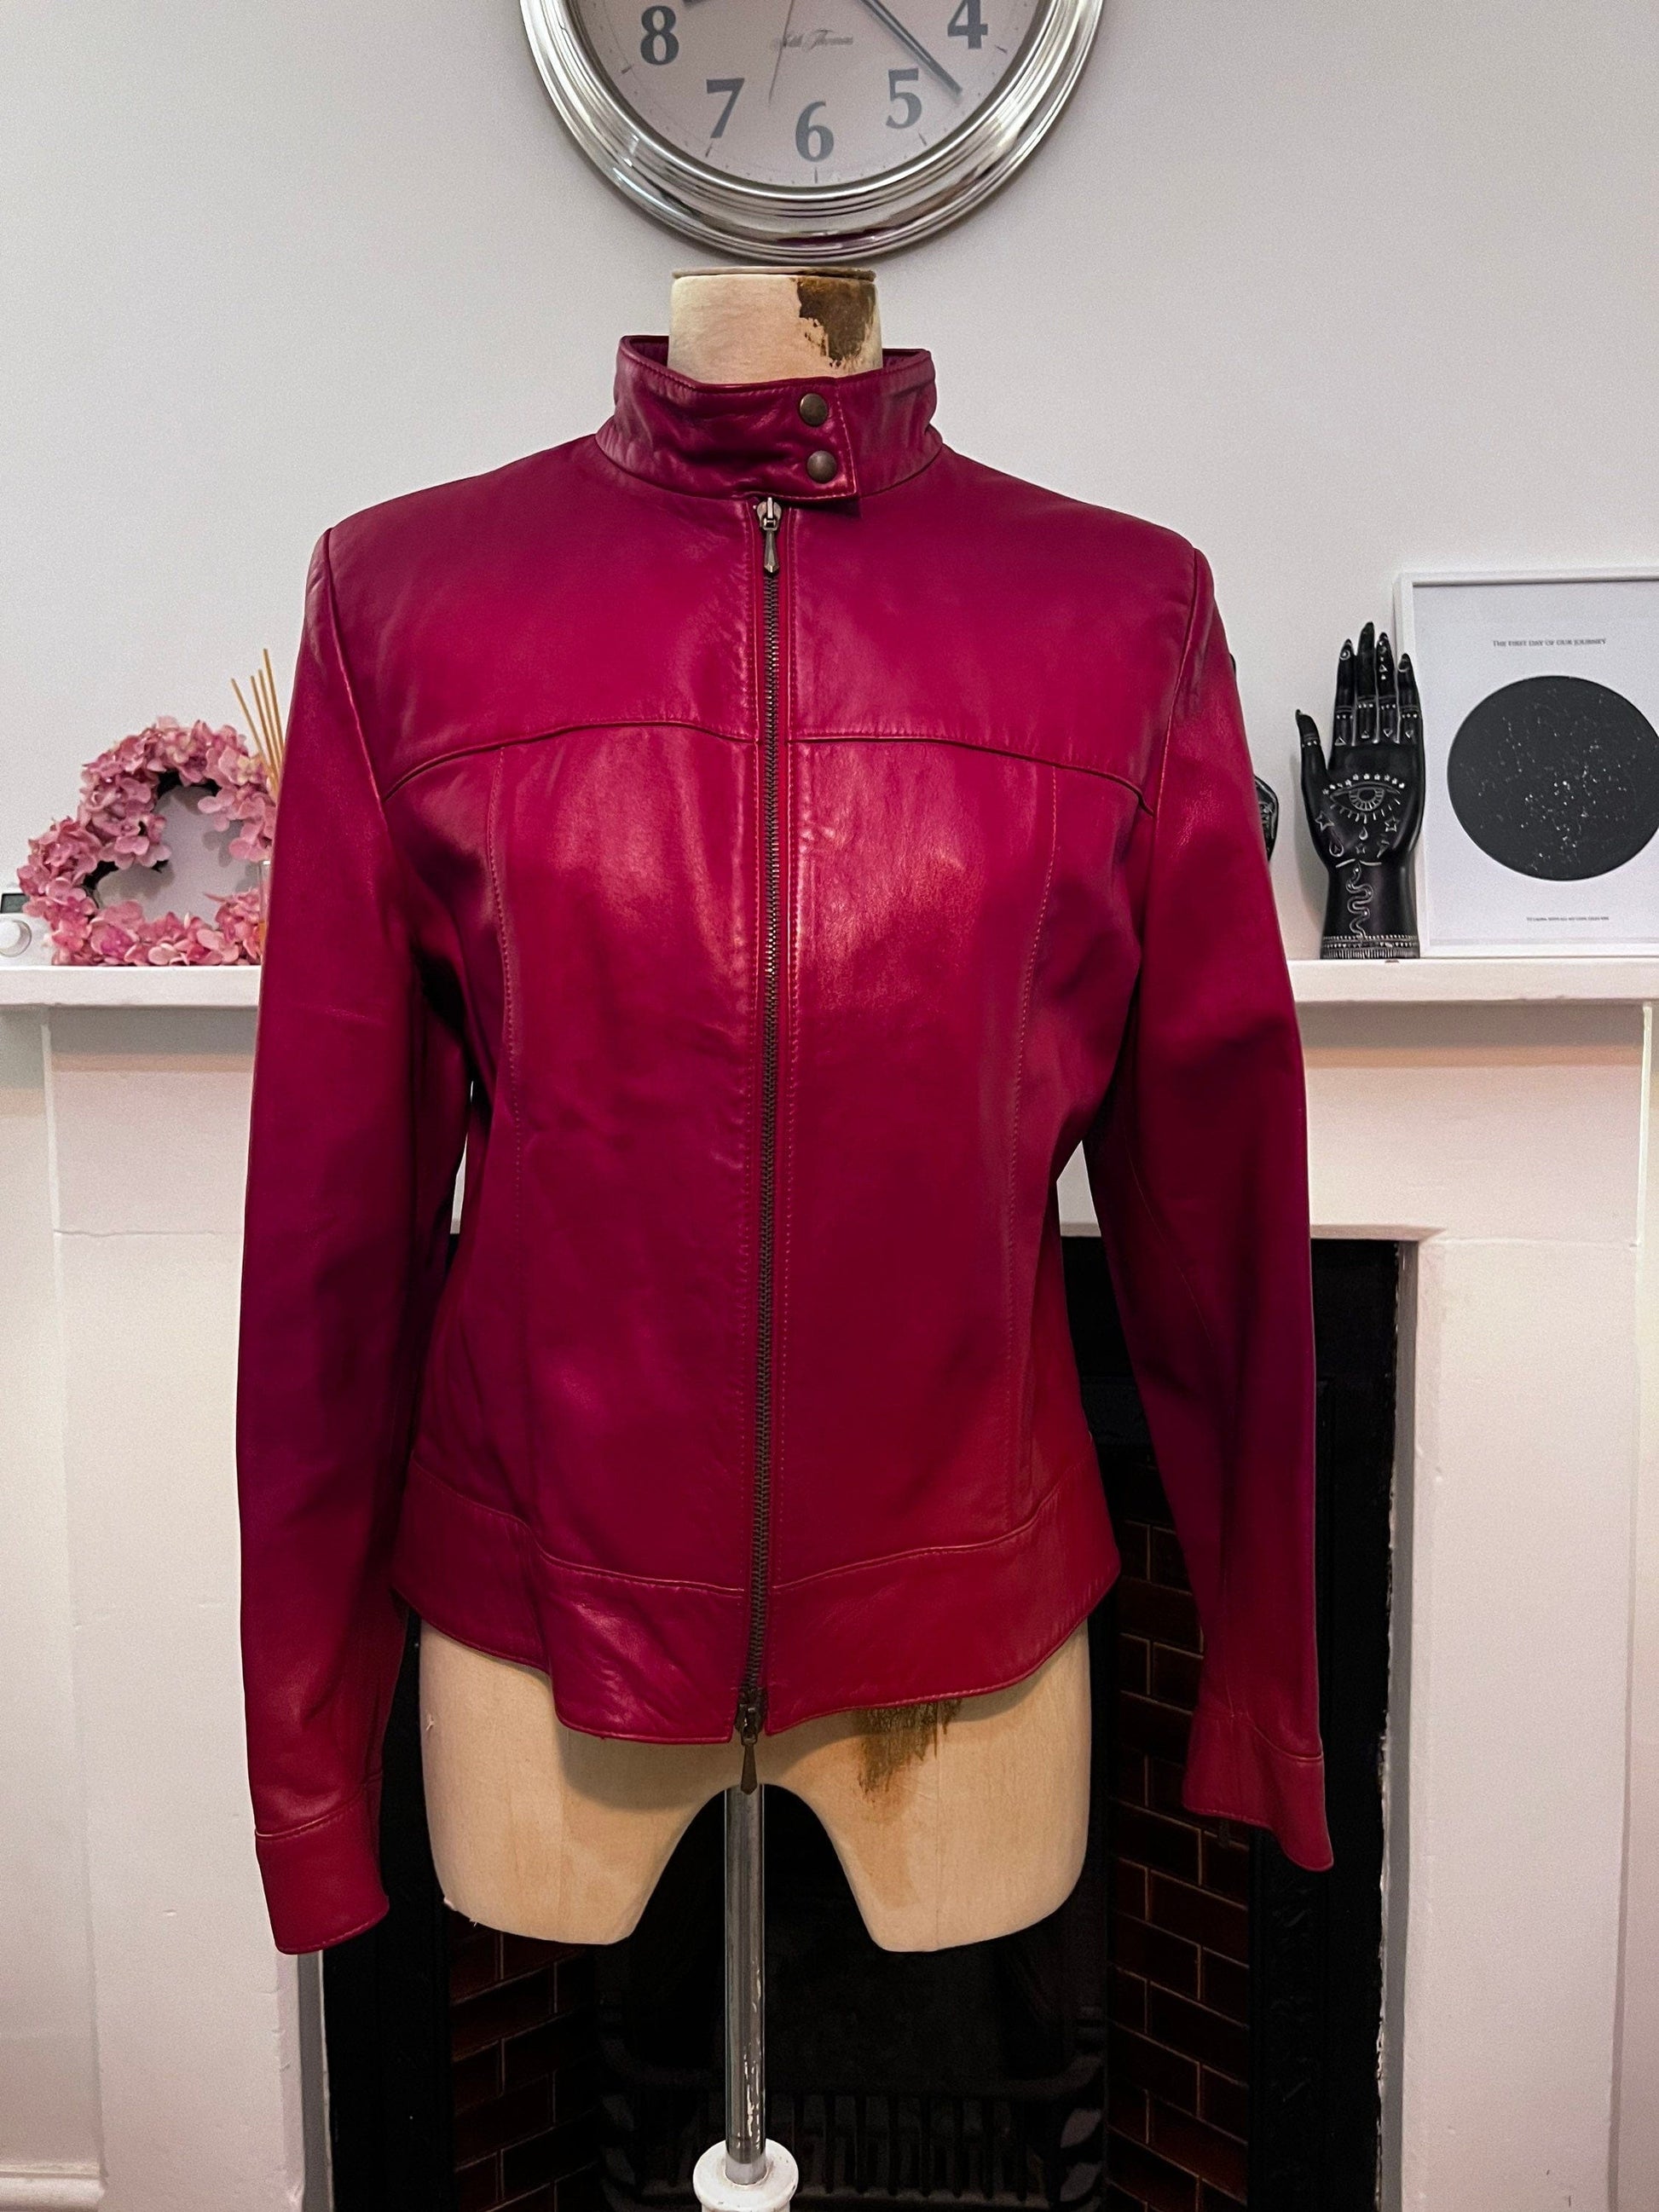 Vintage Red Leather Biker Jacket 1990s St Michael Marks and Spencer - Deep Red shiny leather Biker Jacket